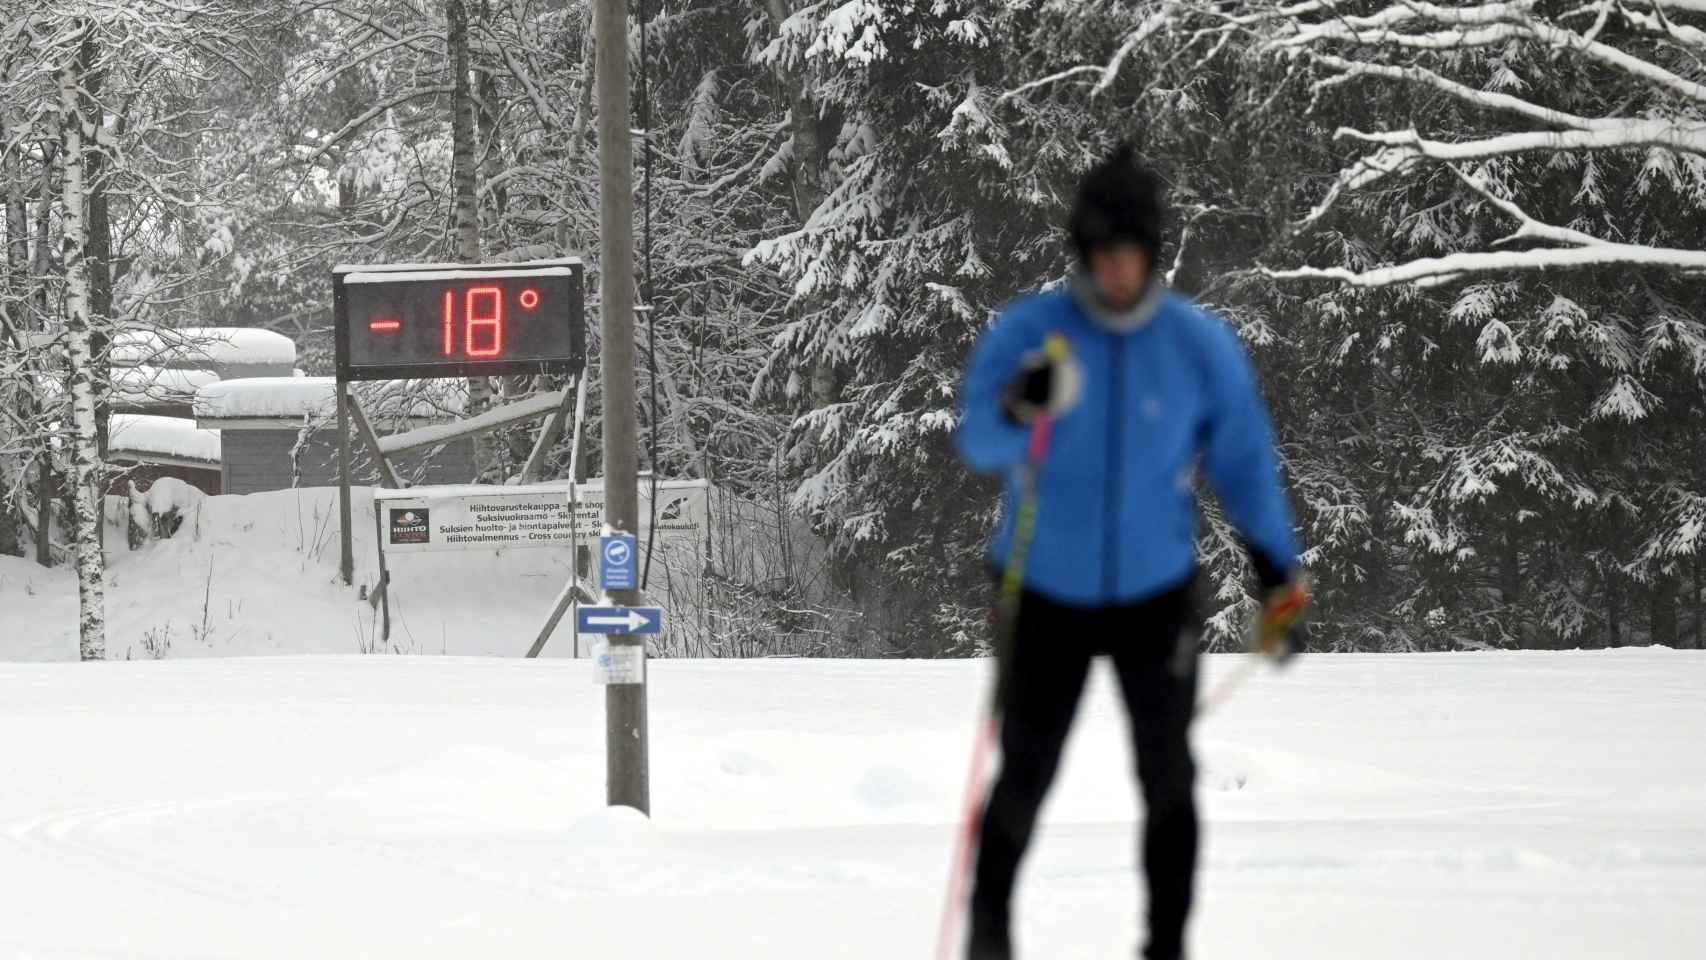 Una persona esquiando en Finlandia con 18 grados bajo cero.